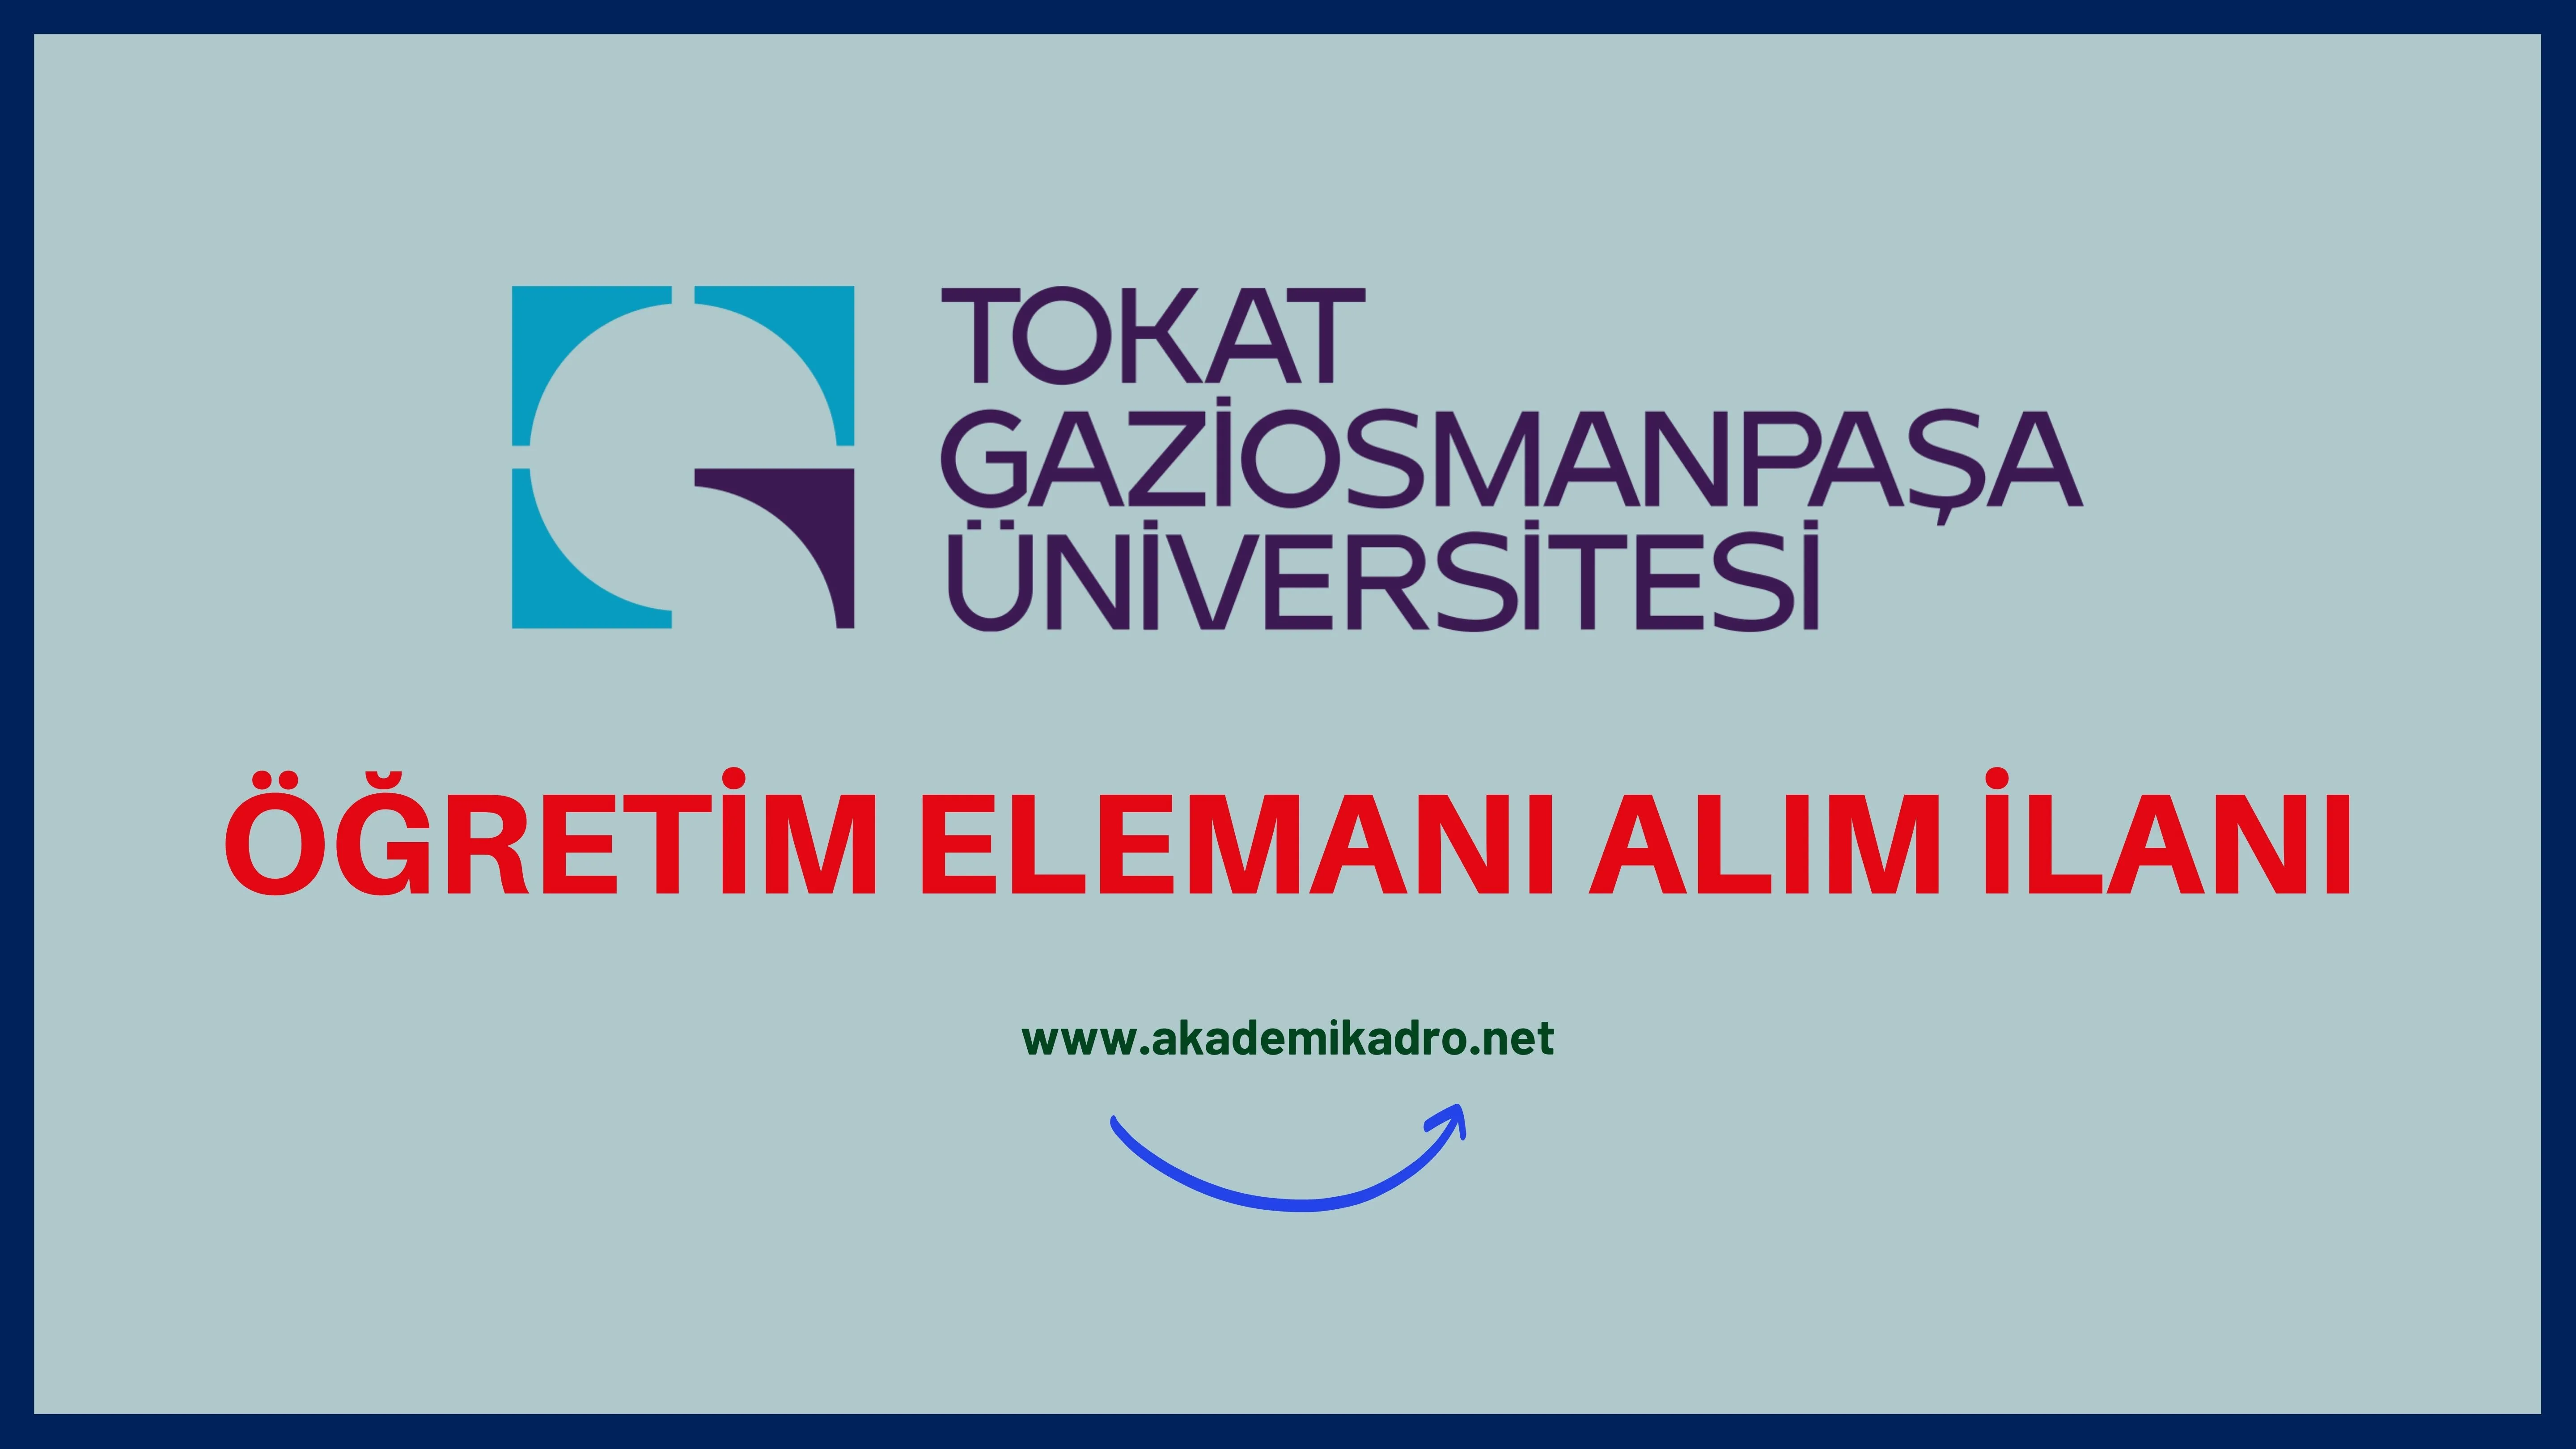 Tokat Gaziosmanpaşa Üniversitesi Öğretim görevlisi ilanında düzeltme yaptı